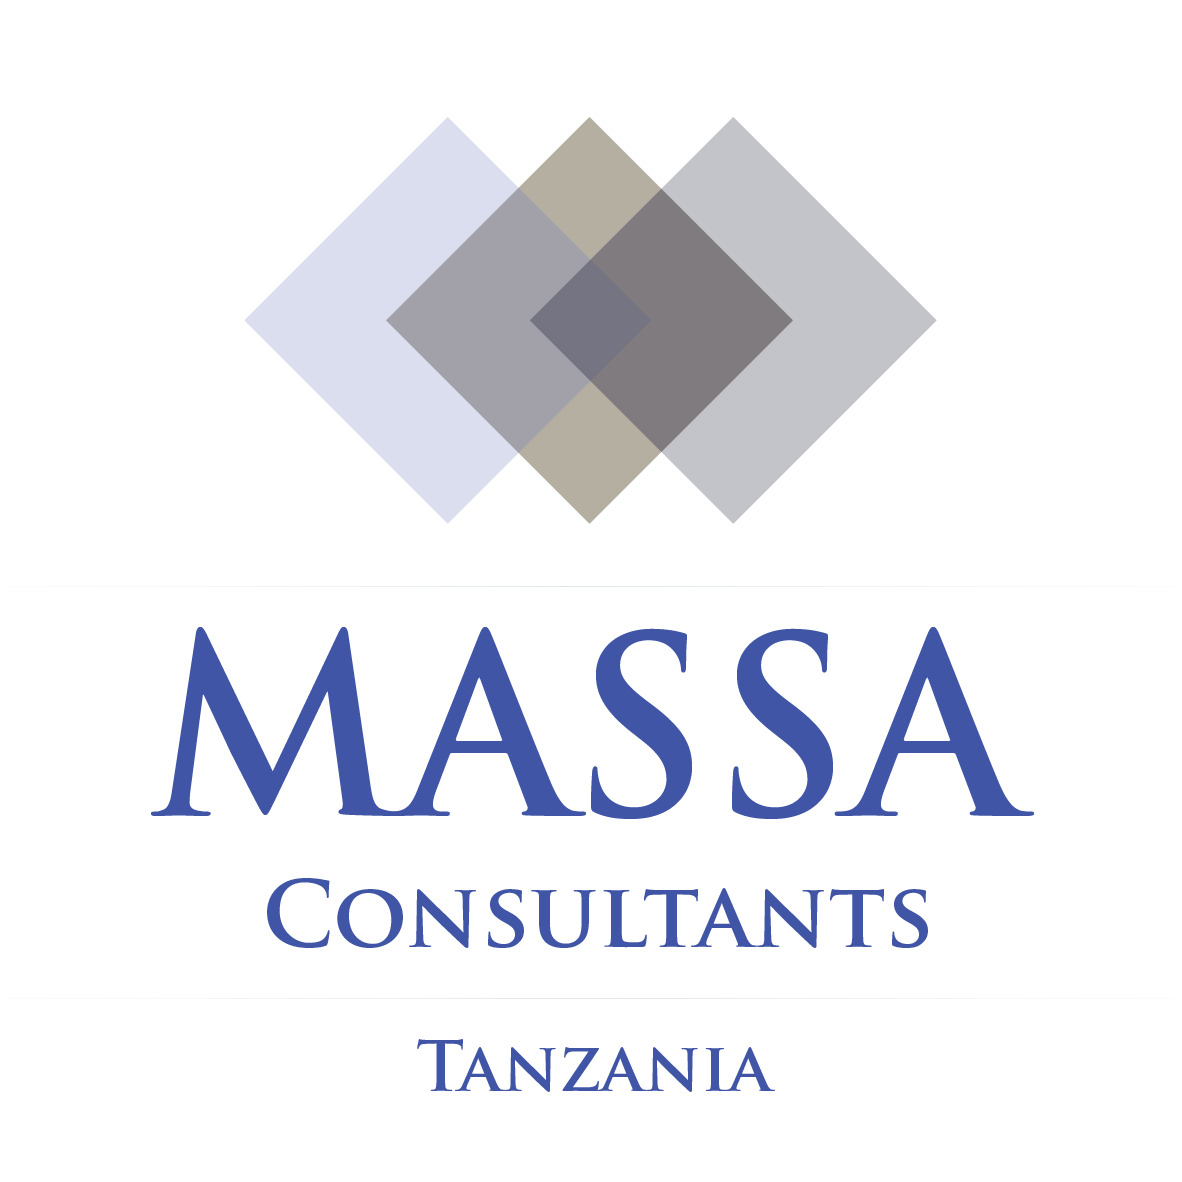 Massa Consultants Tanzania